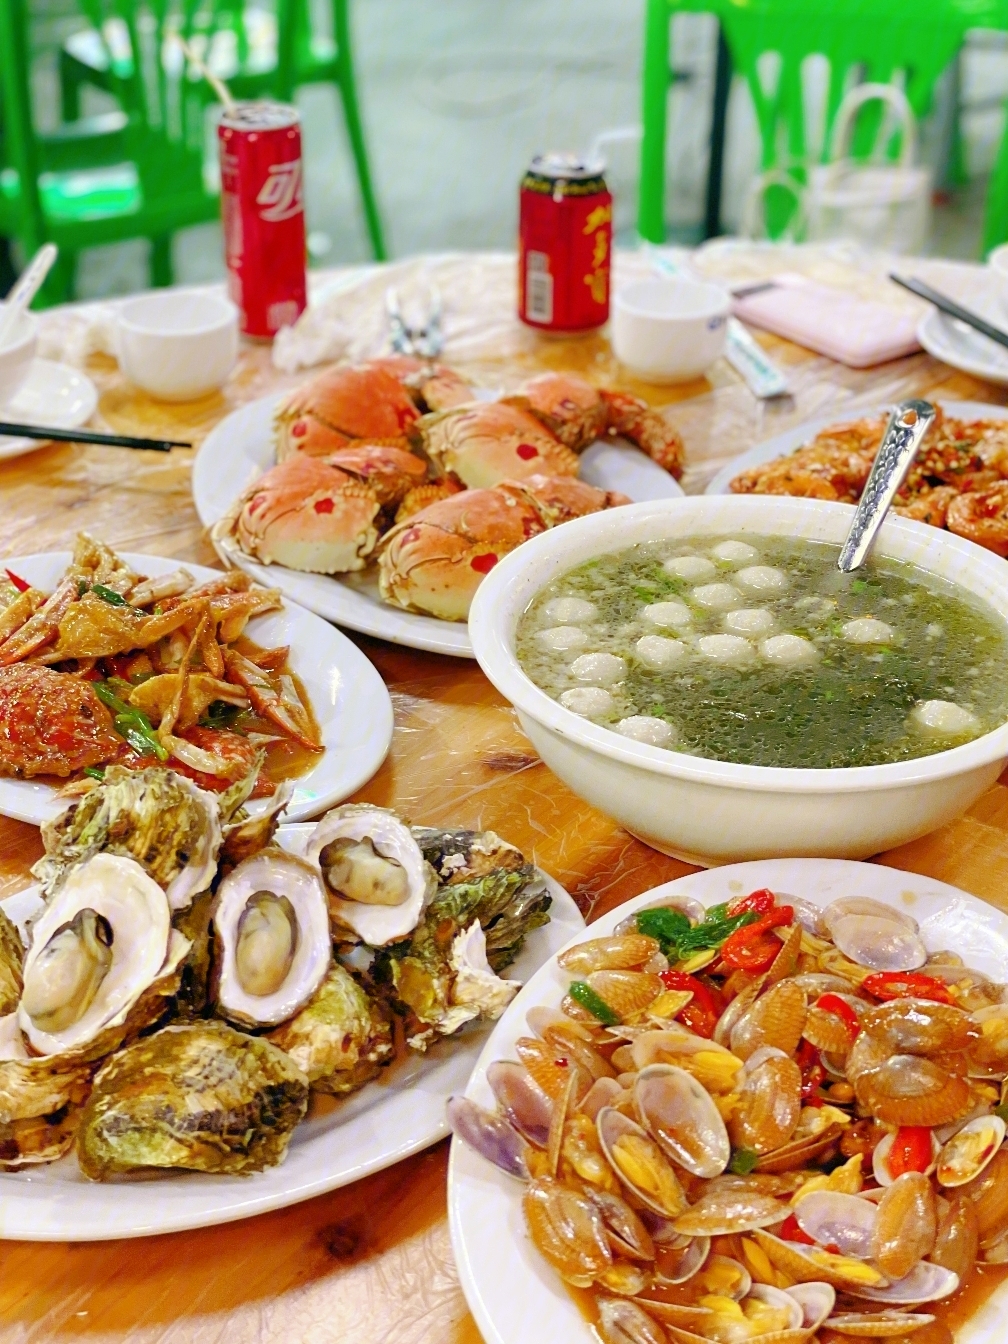 青澳湾附近吃了一家现捞现煮,灰常新鲜的海鲜大排档9502种类繁多